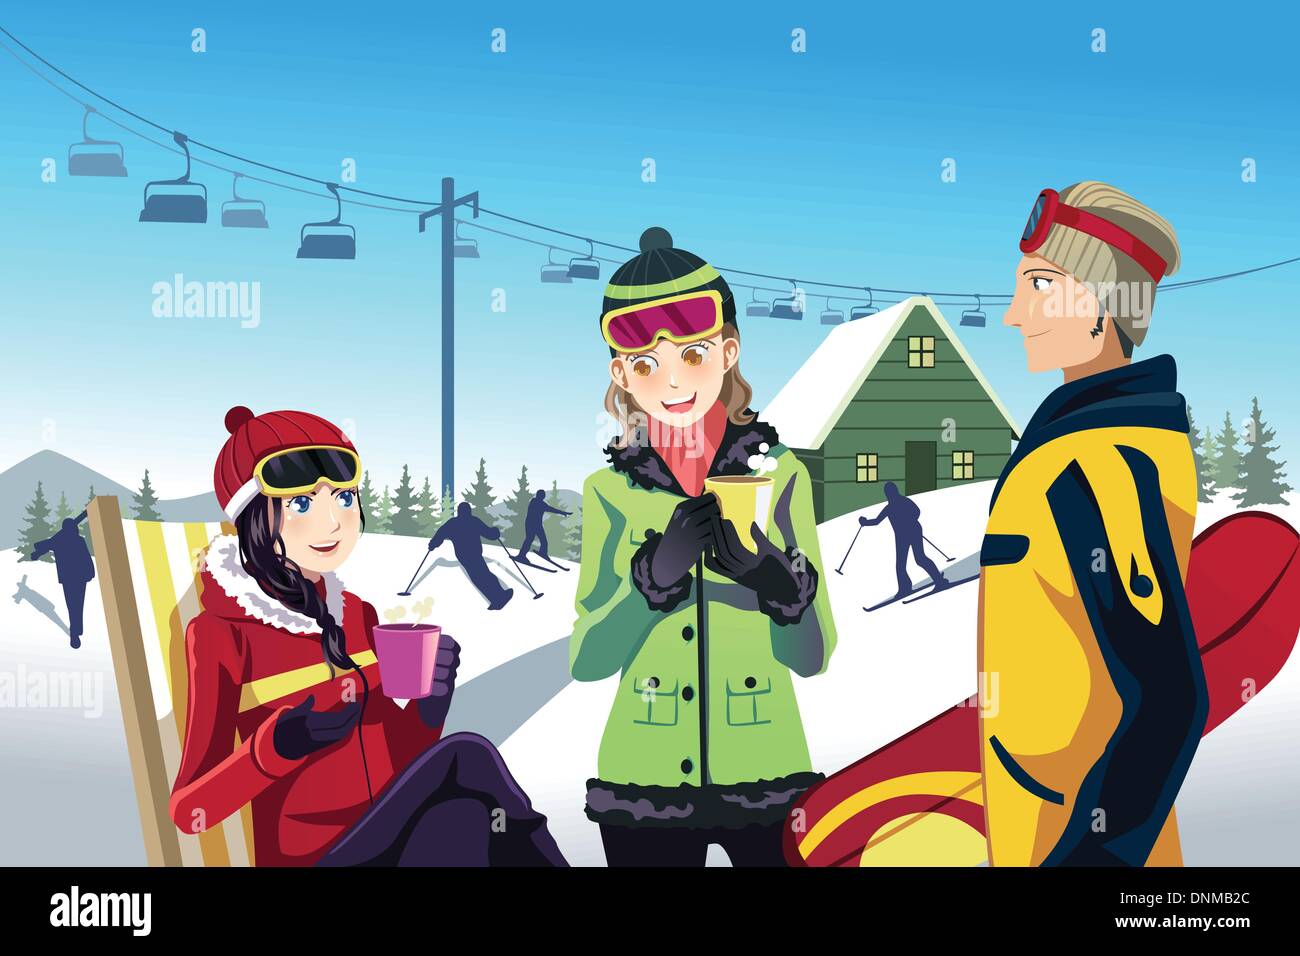 Un vecteur illustration de ski d'amis dans une station de ski Illustration de Vecteur